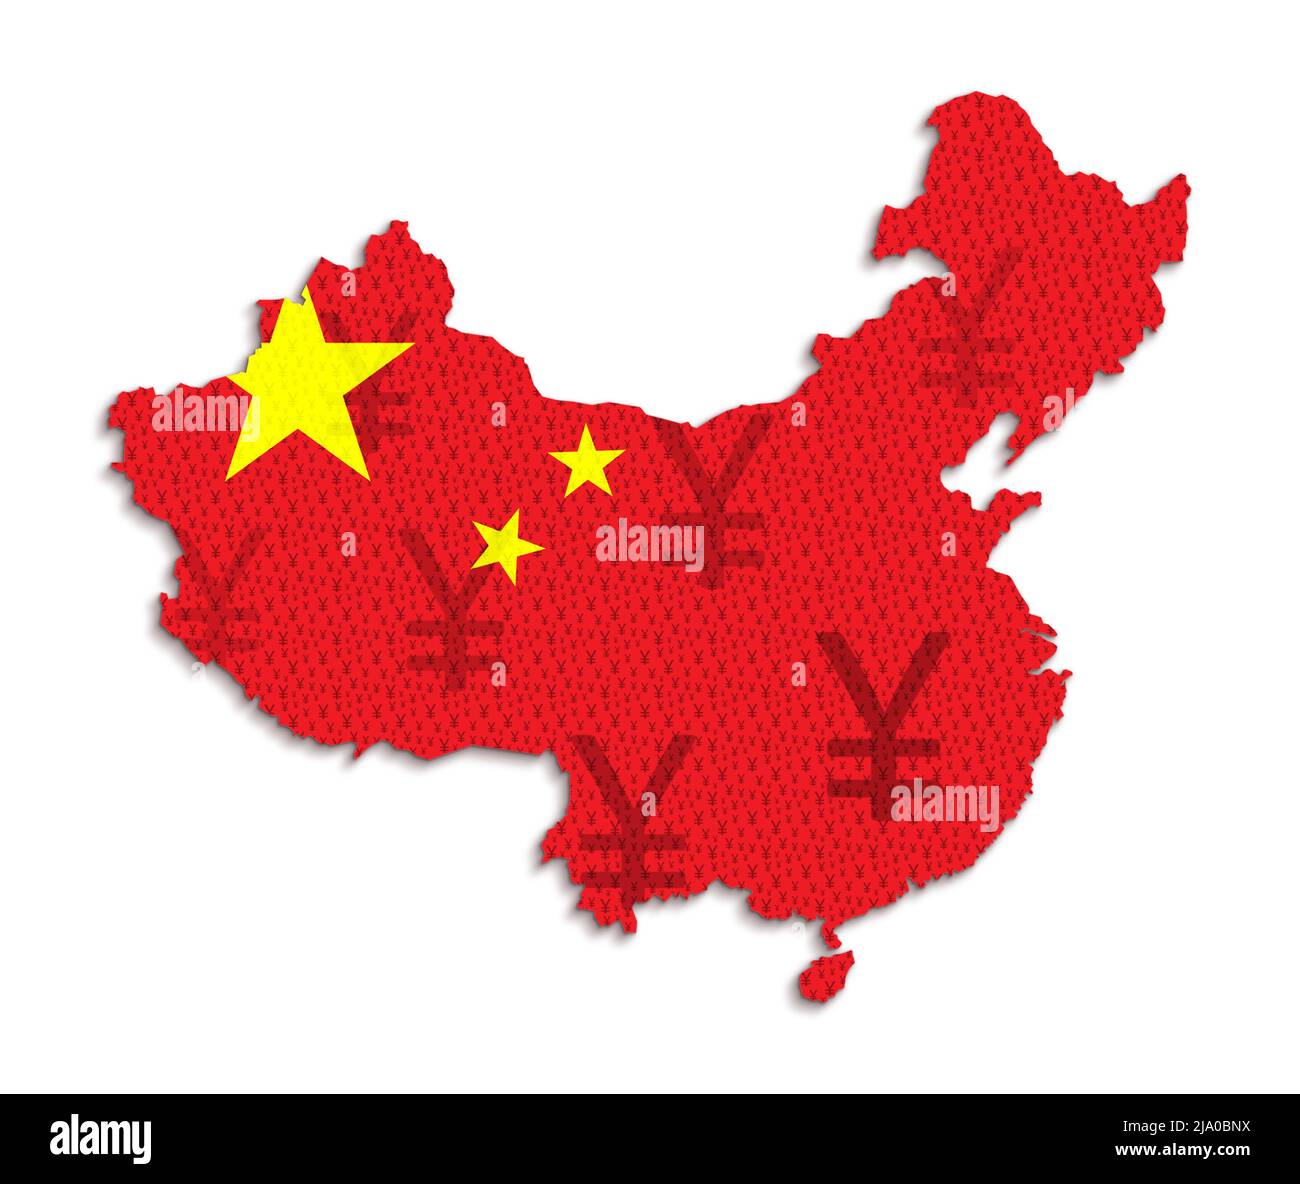 Rote chinesische Flagge und Karte von China aus Yuan (chinesische Währung Renminbi) Symbole. Abstrakte Konzeptdarstellung auf weißem Hintergrund. Stockfoto